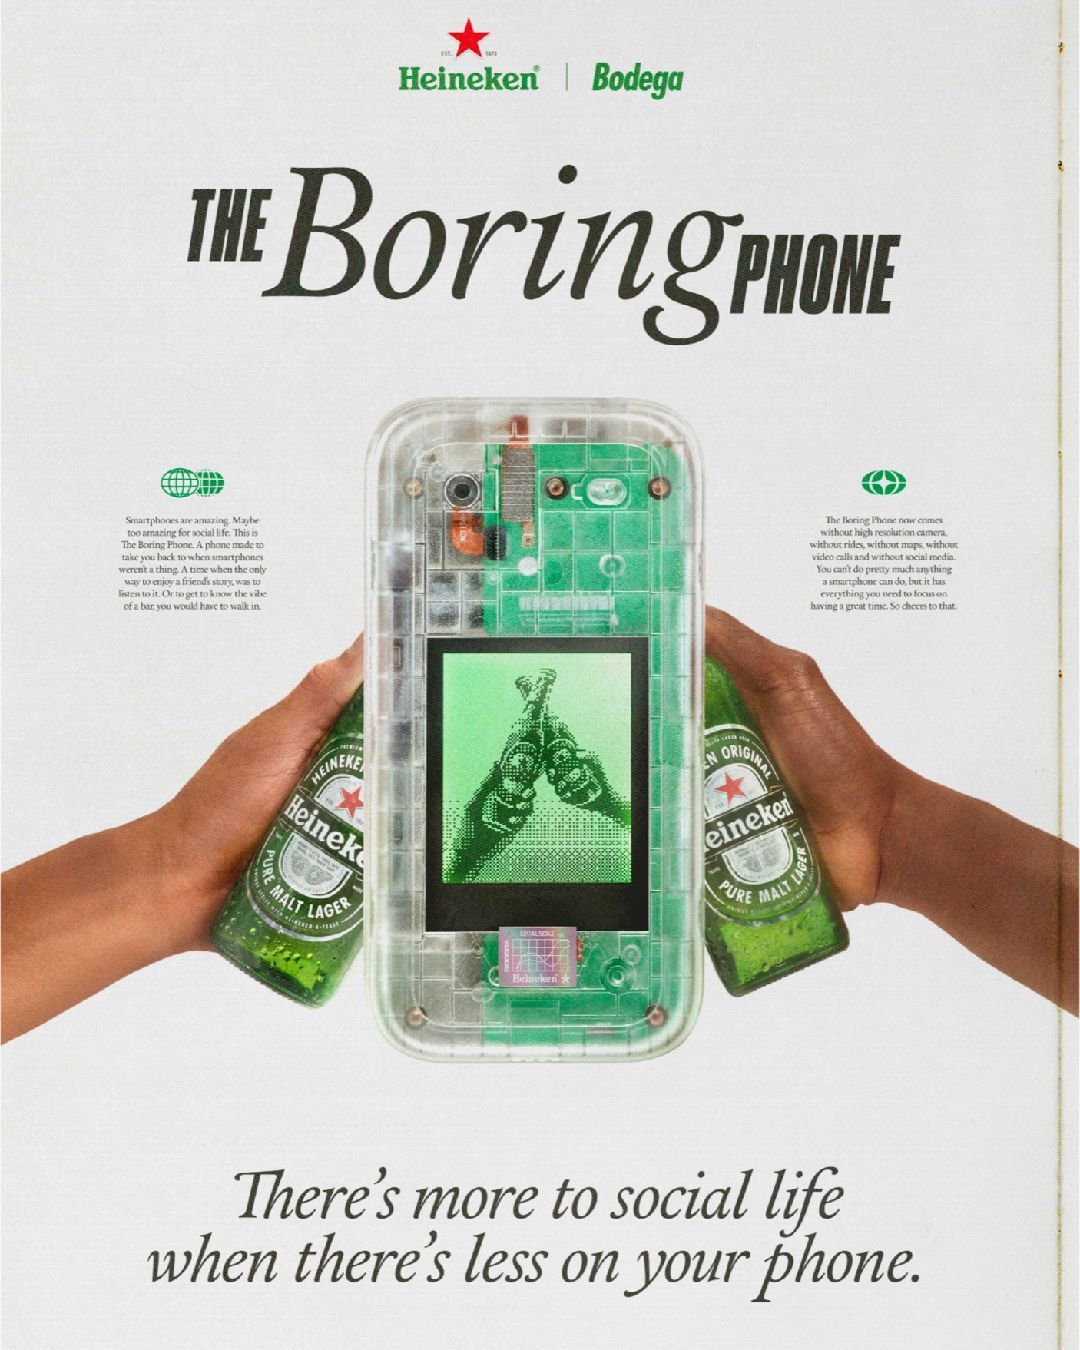 Un'esperienza offline con Heineken e Bodega  The Boring Phone invita a spegnere i telefoni e a godersi il momento